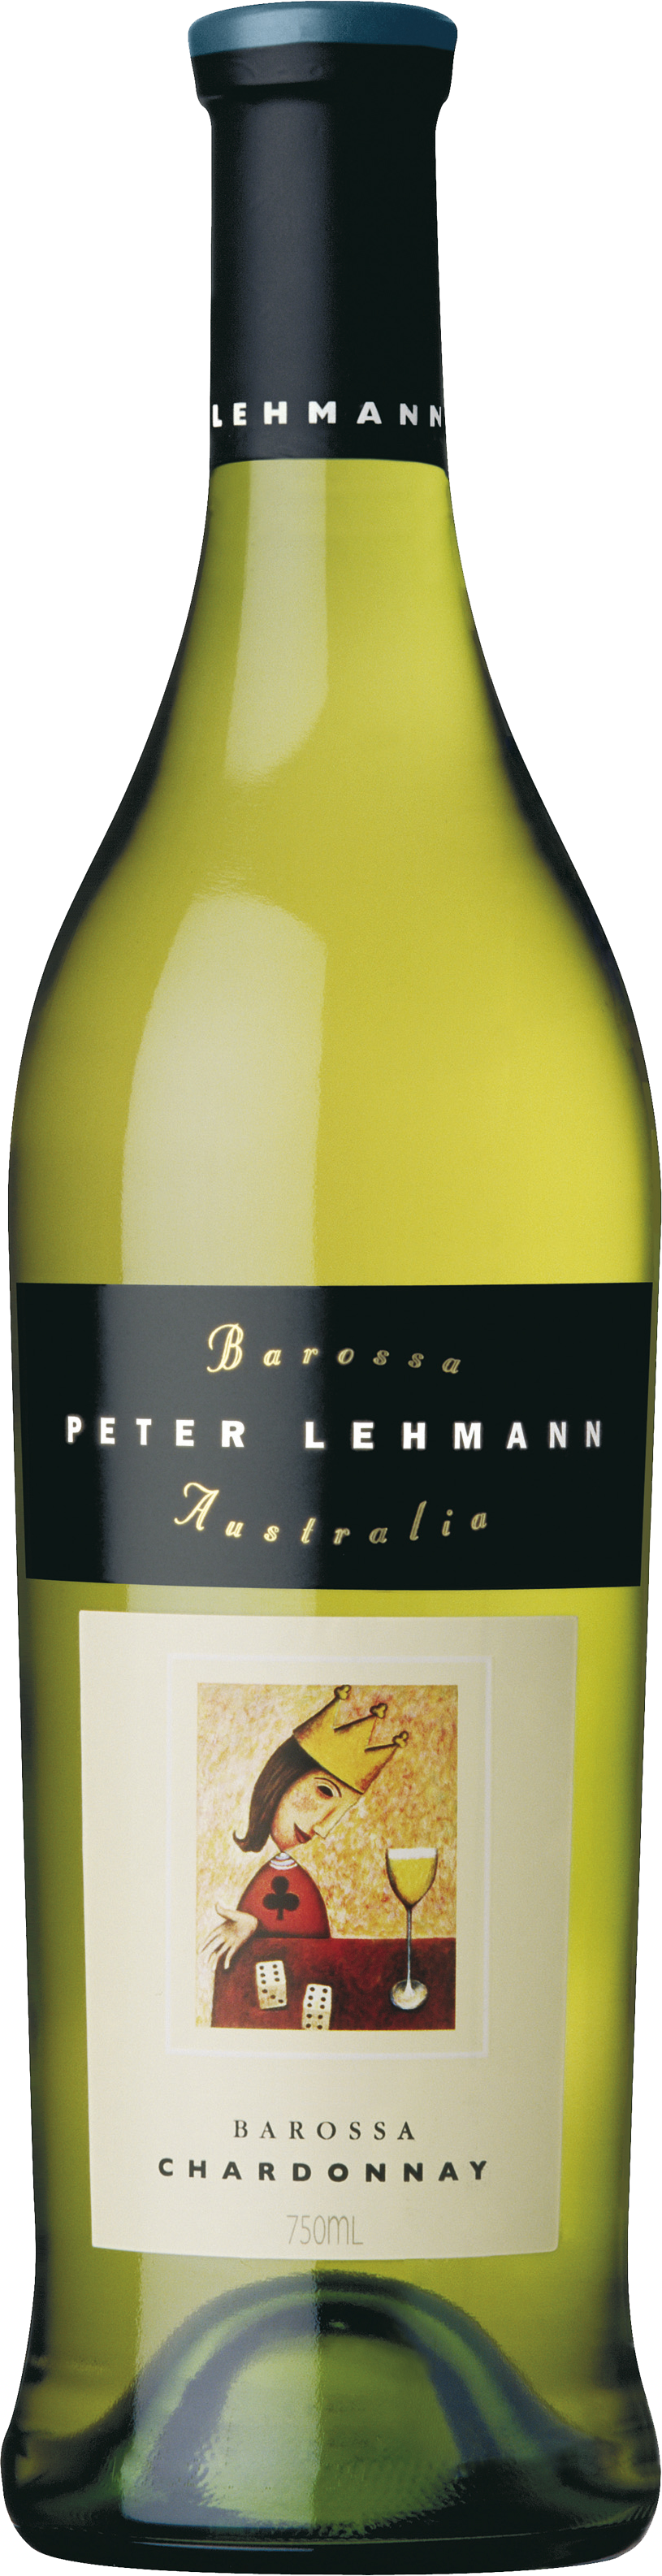 Köstlichalkoholisches - Peter Lehmann Barossa Chardonnay - Onlineshop Ludwig von Kapff